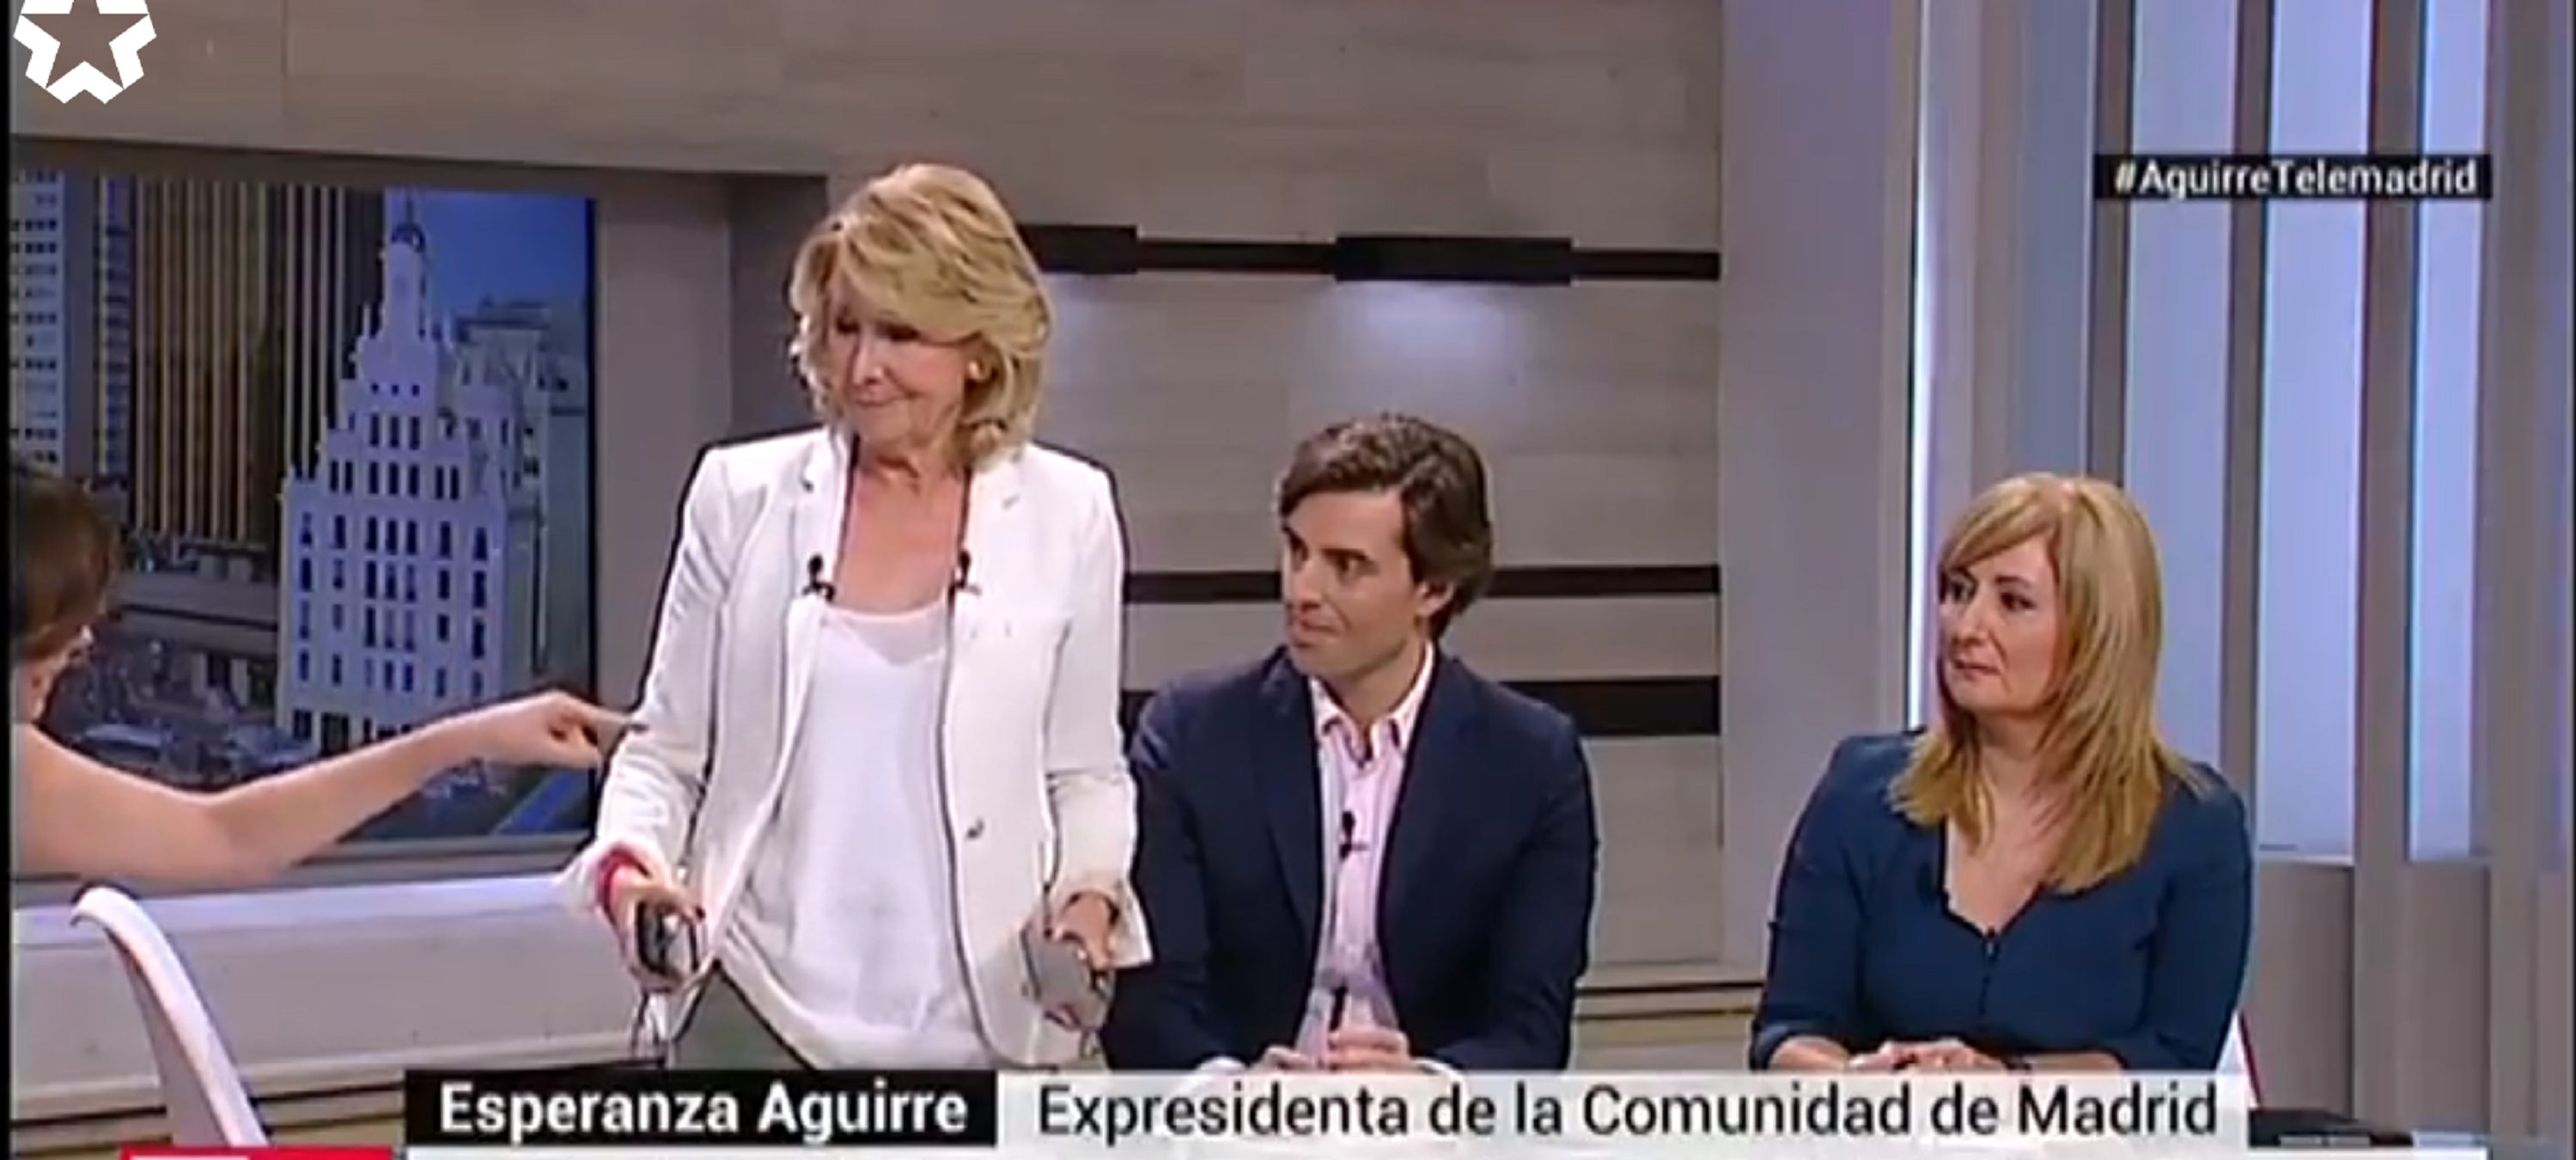 Esperanza Aguirre se va indignada del plató de Telemadrid: "¡Sois anti-PP!"